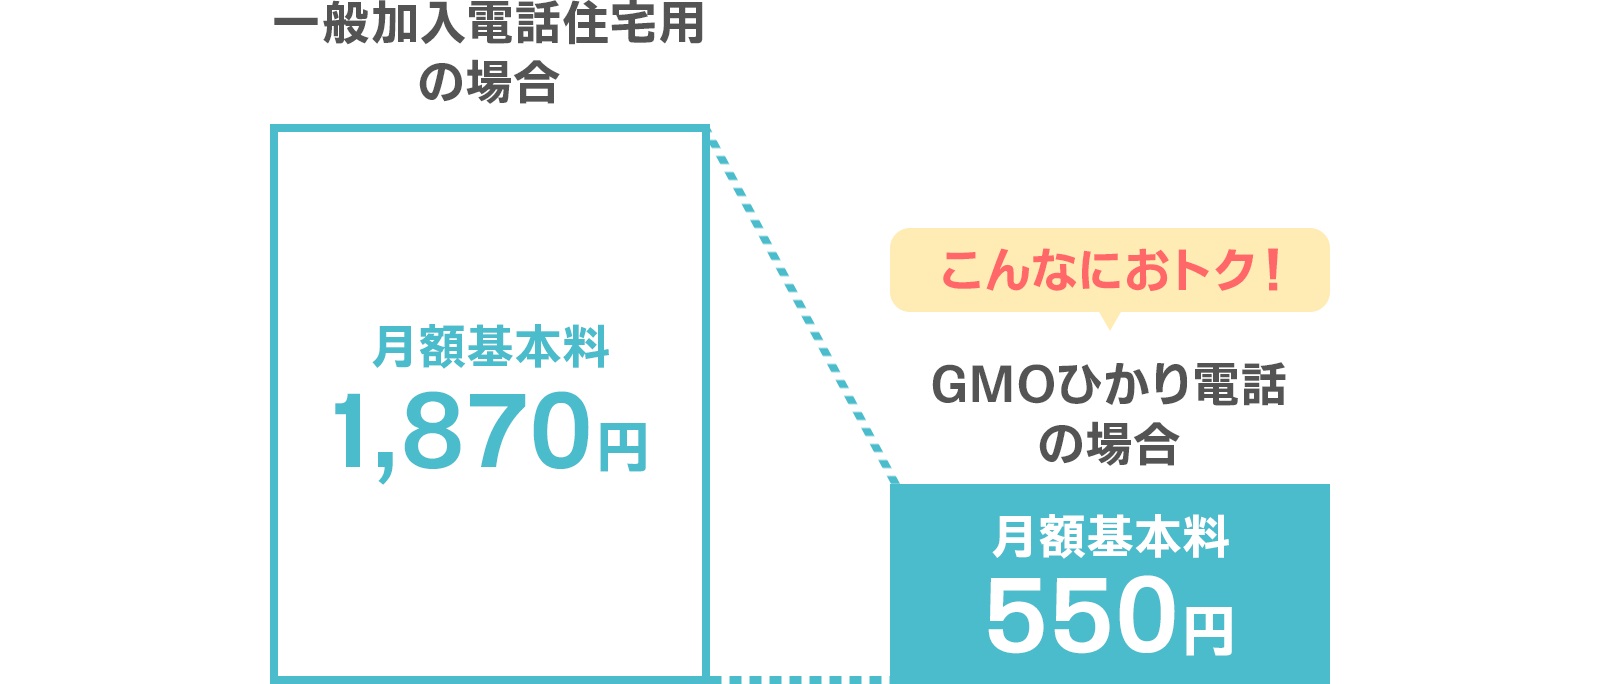 GMOひかり電話 料金がお得な解説の図